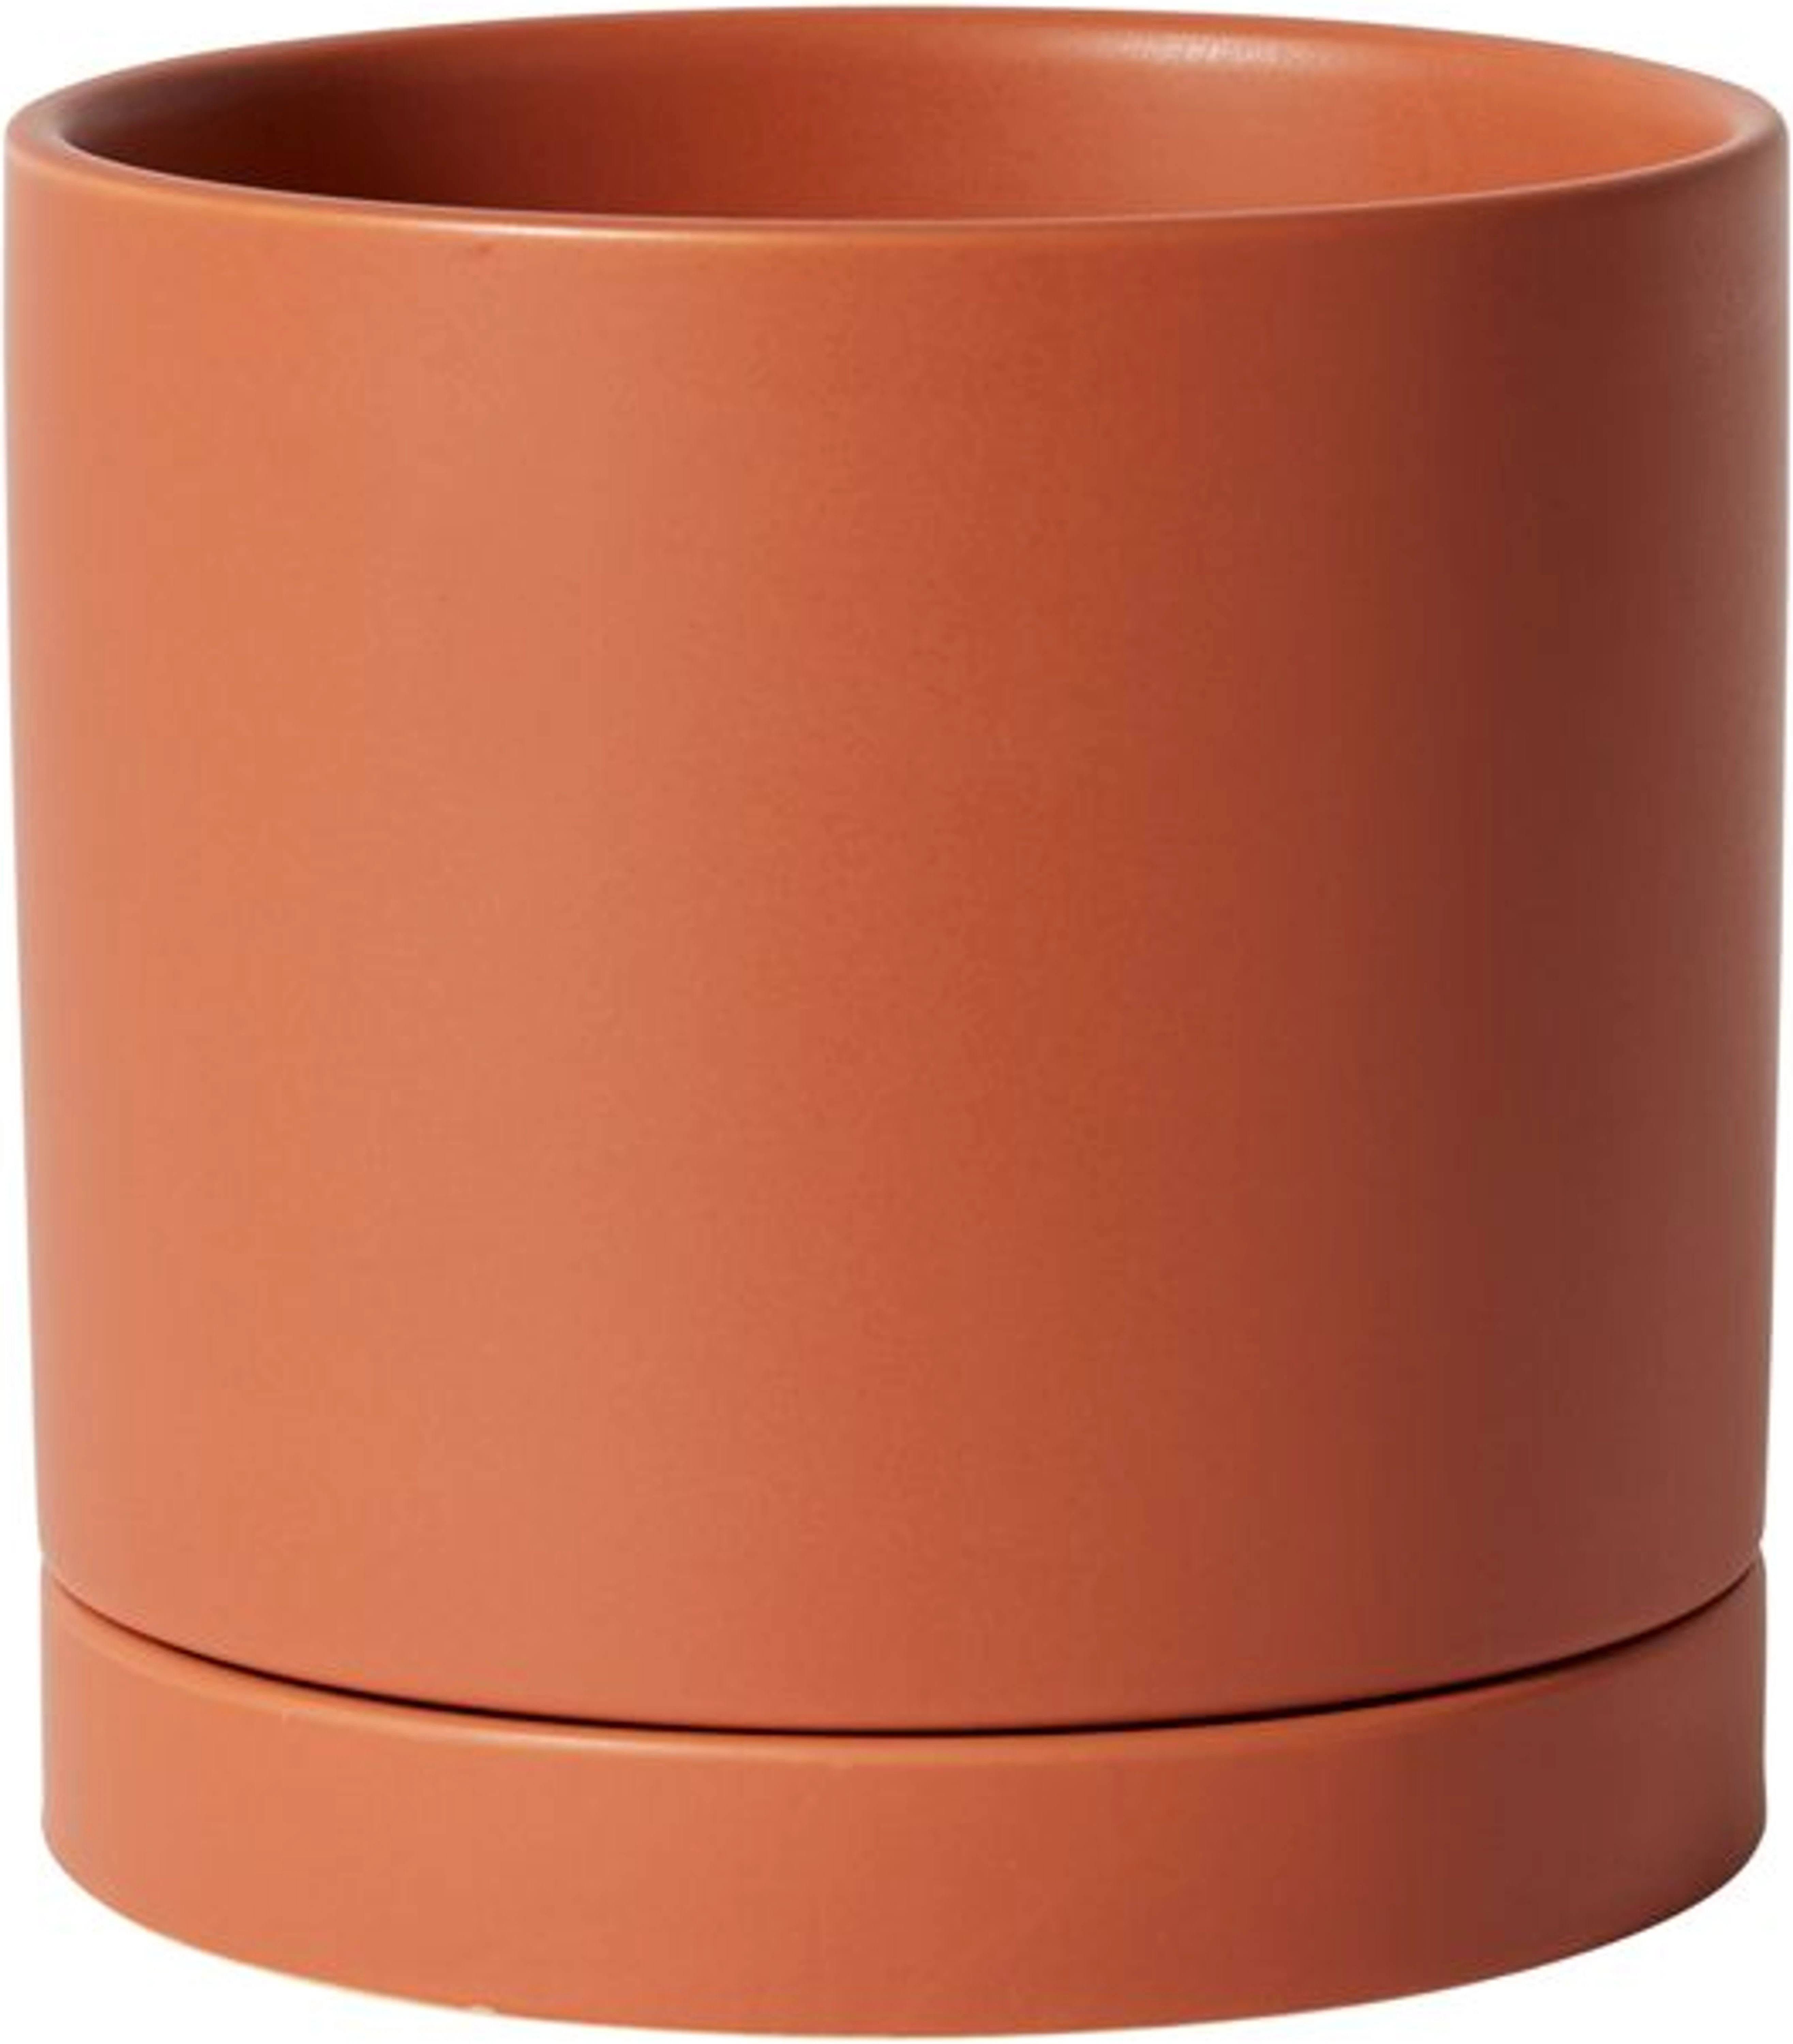 Romey Terracotta Pots - 7